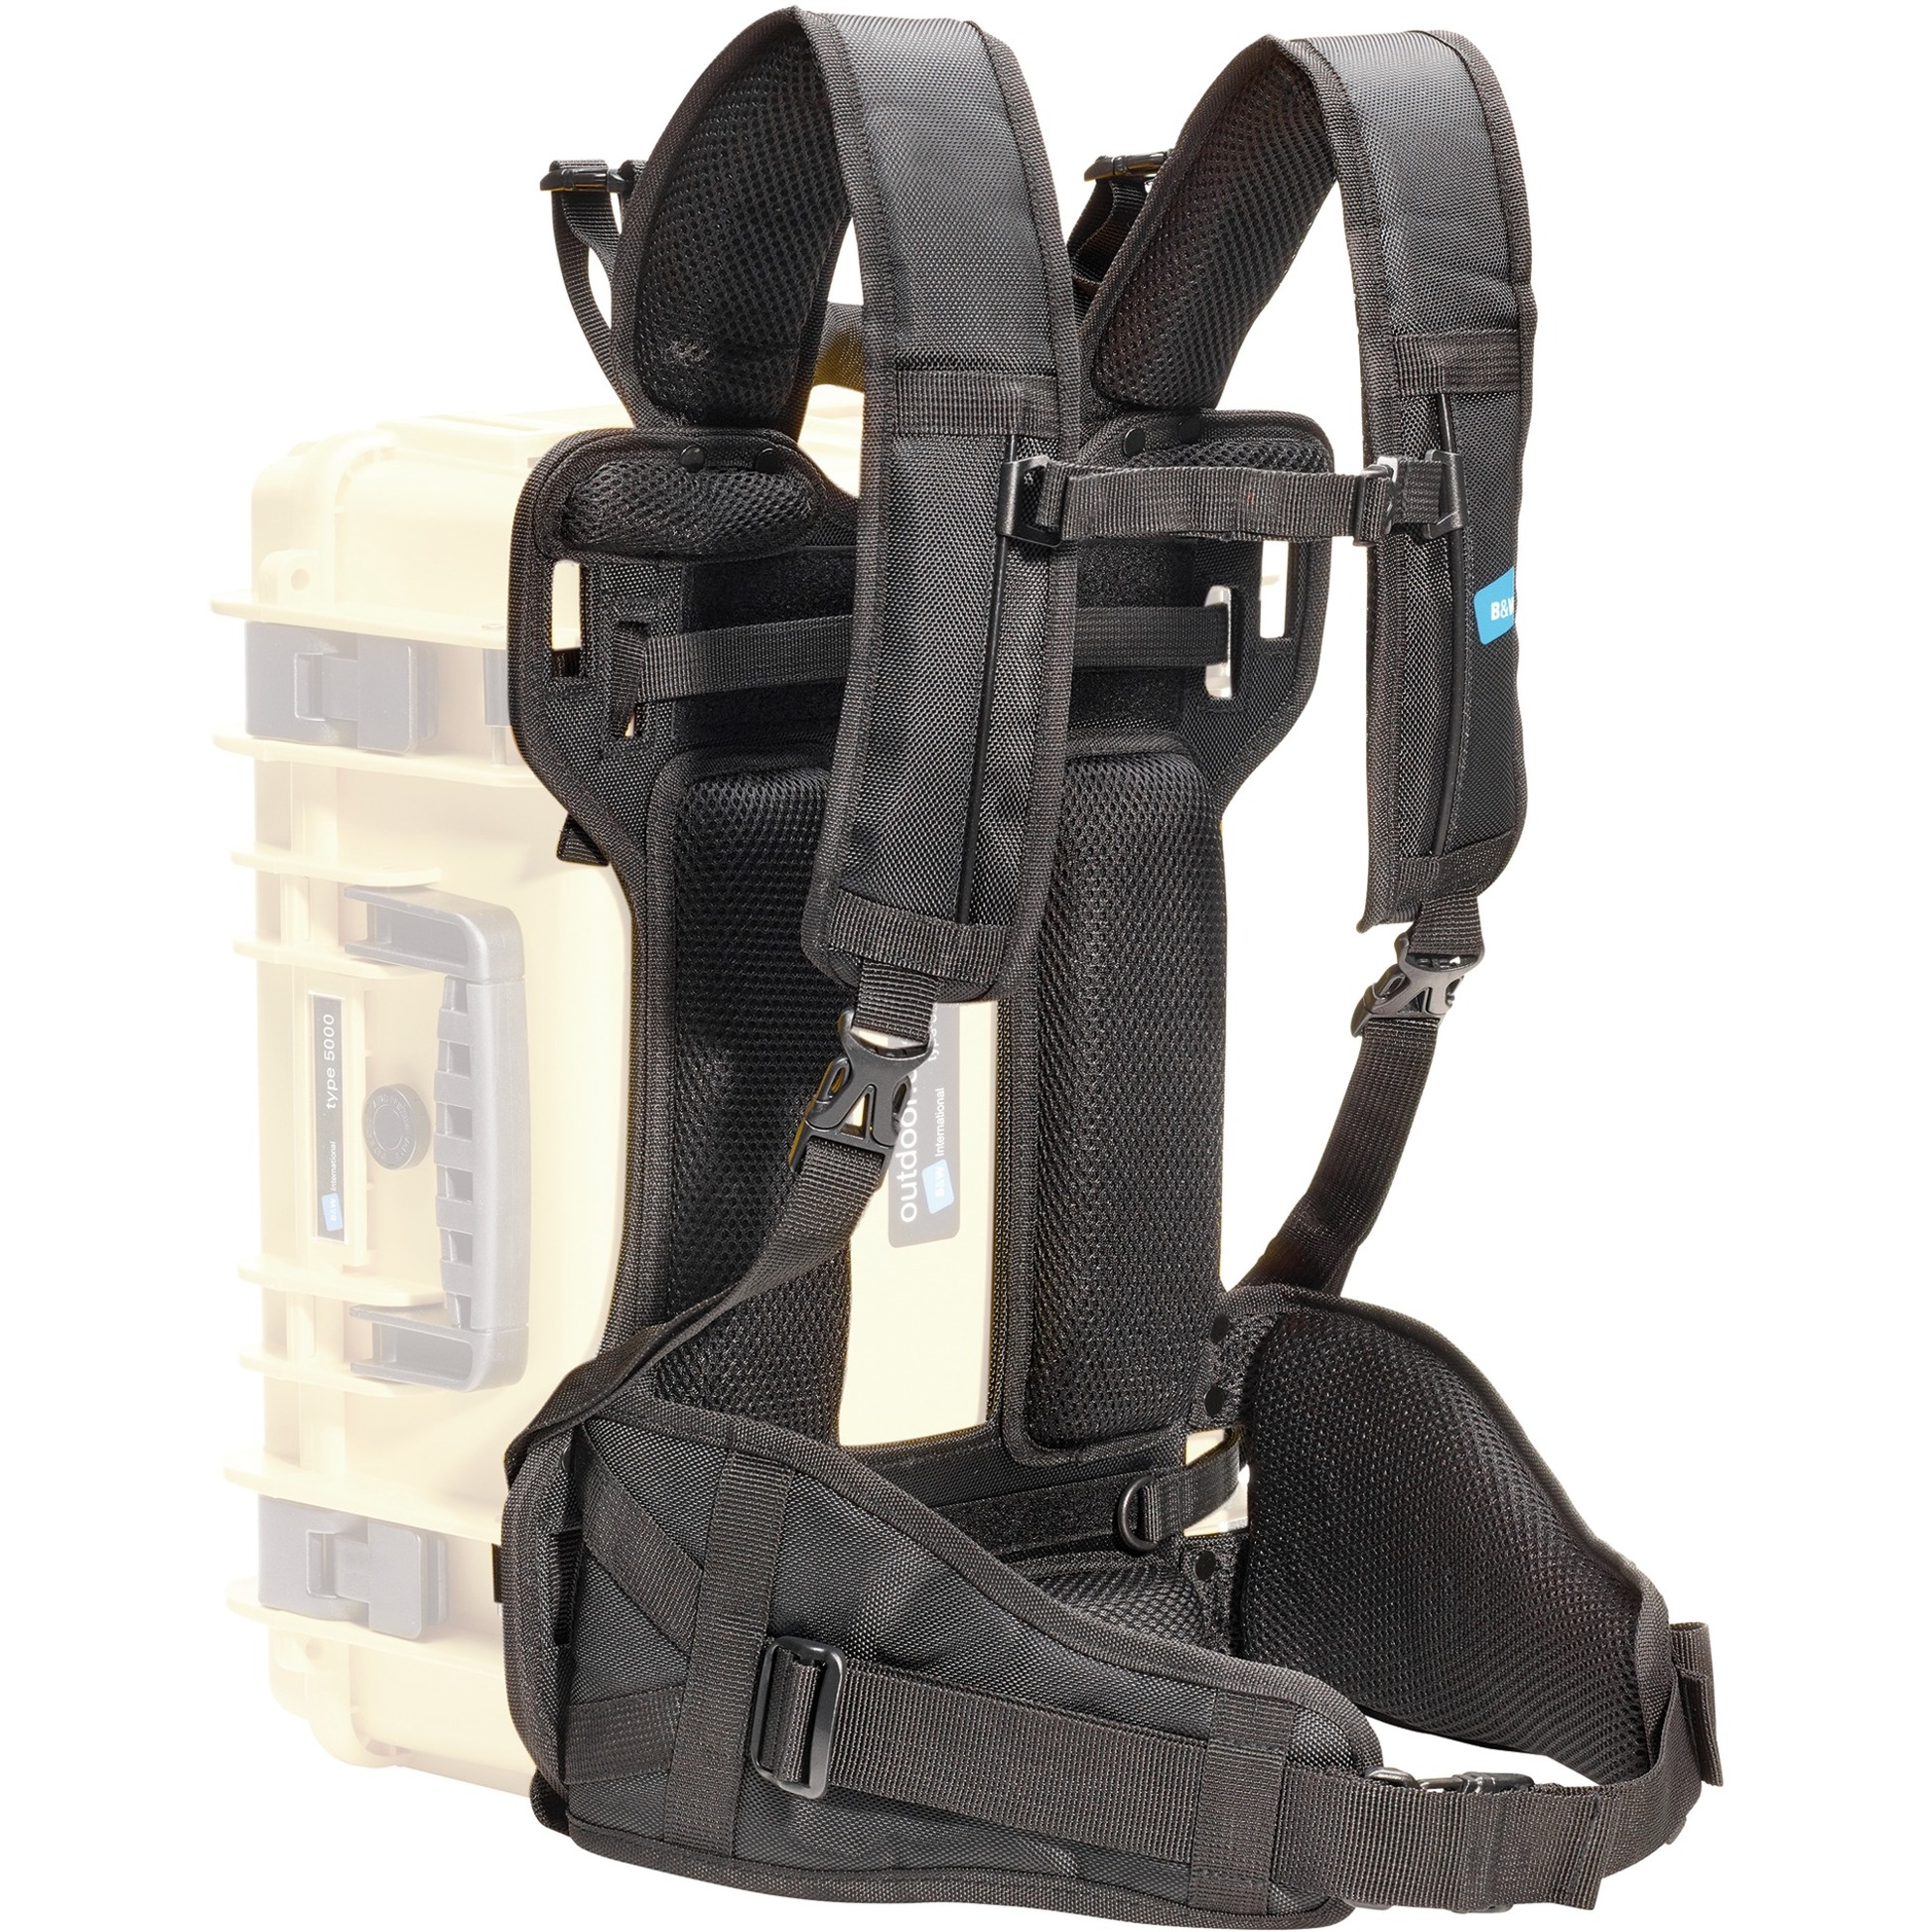 Image of Alternate - Backpack System für Typ 5000/5500/6000, Trageriemen online einkaufen bei Alternate